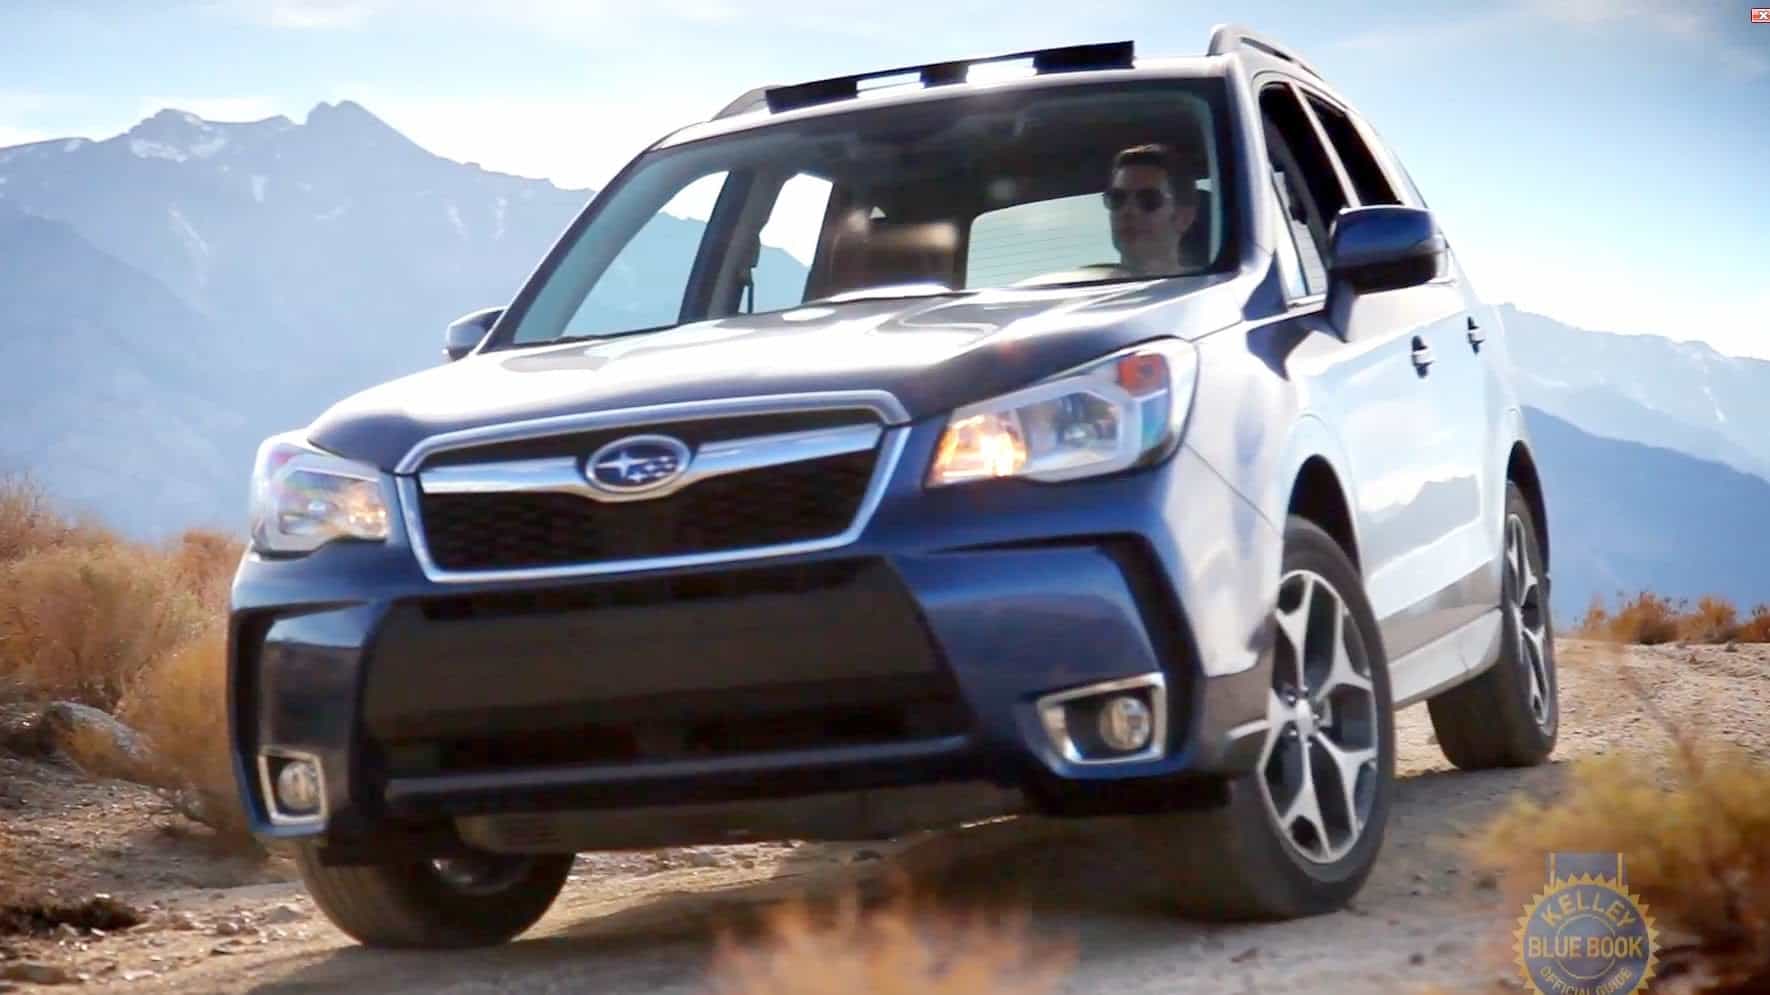 2014 Subaru Forester Car Review Video In Lakeland Florida